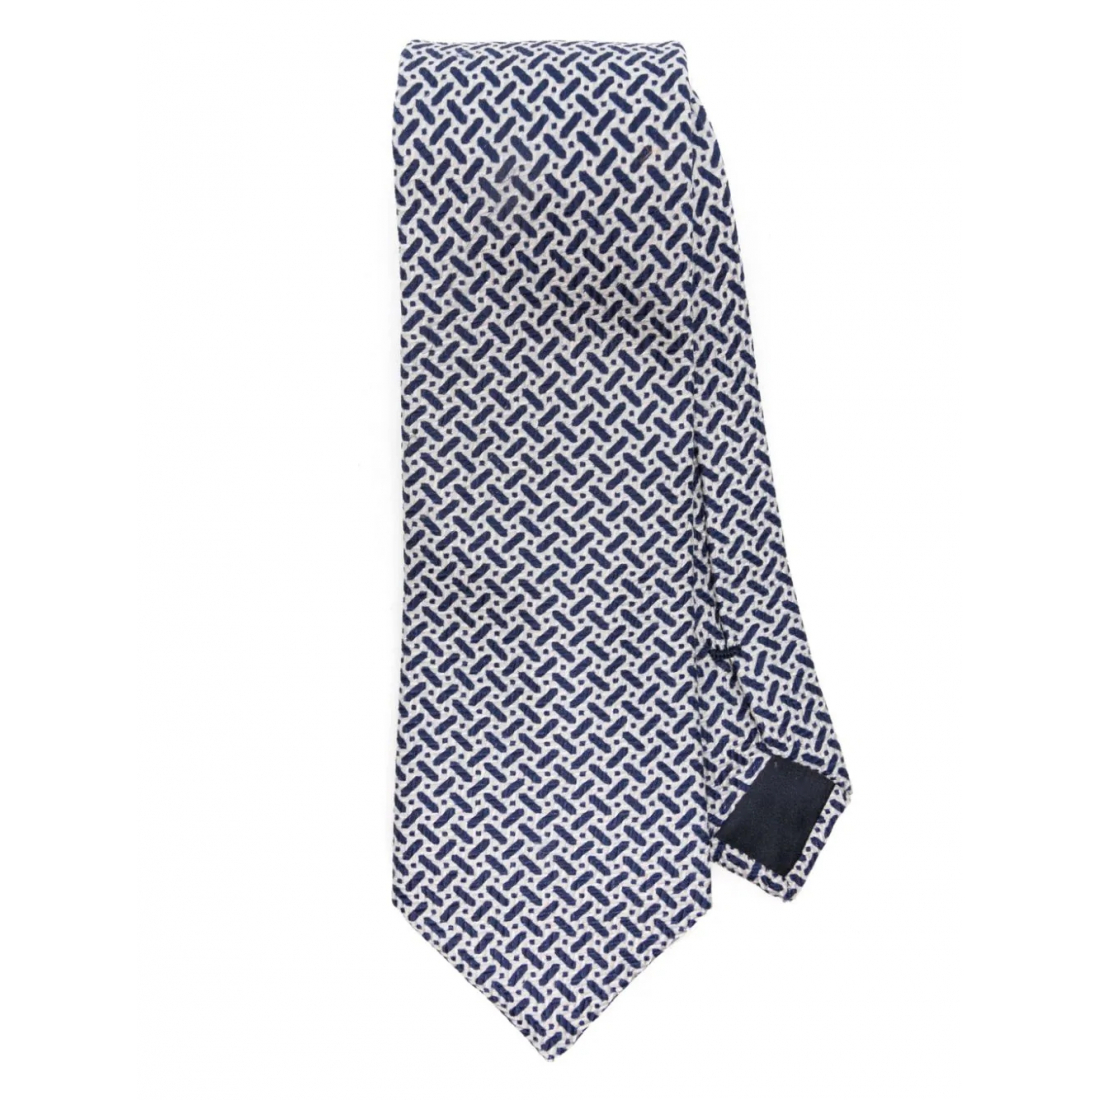 'Graphic' Krawatte für Herren